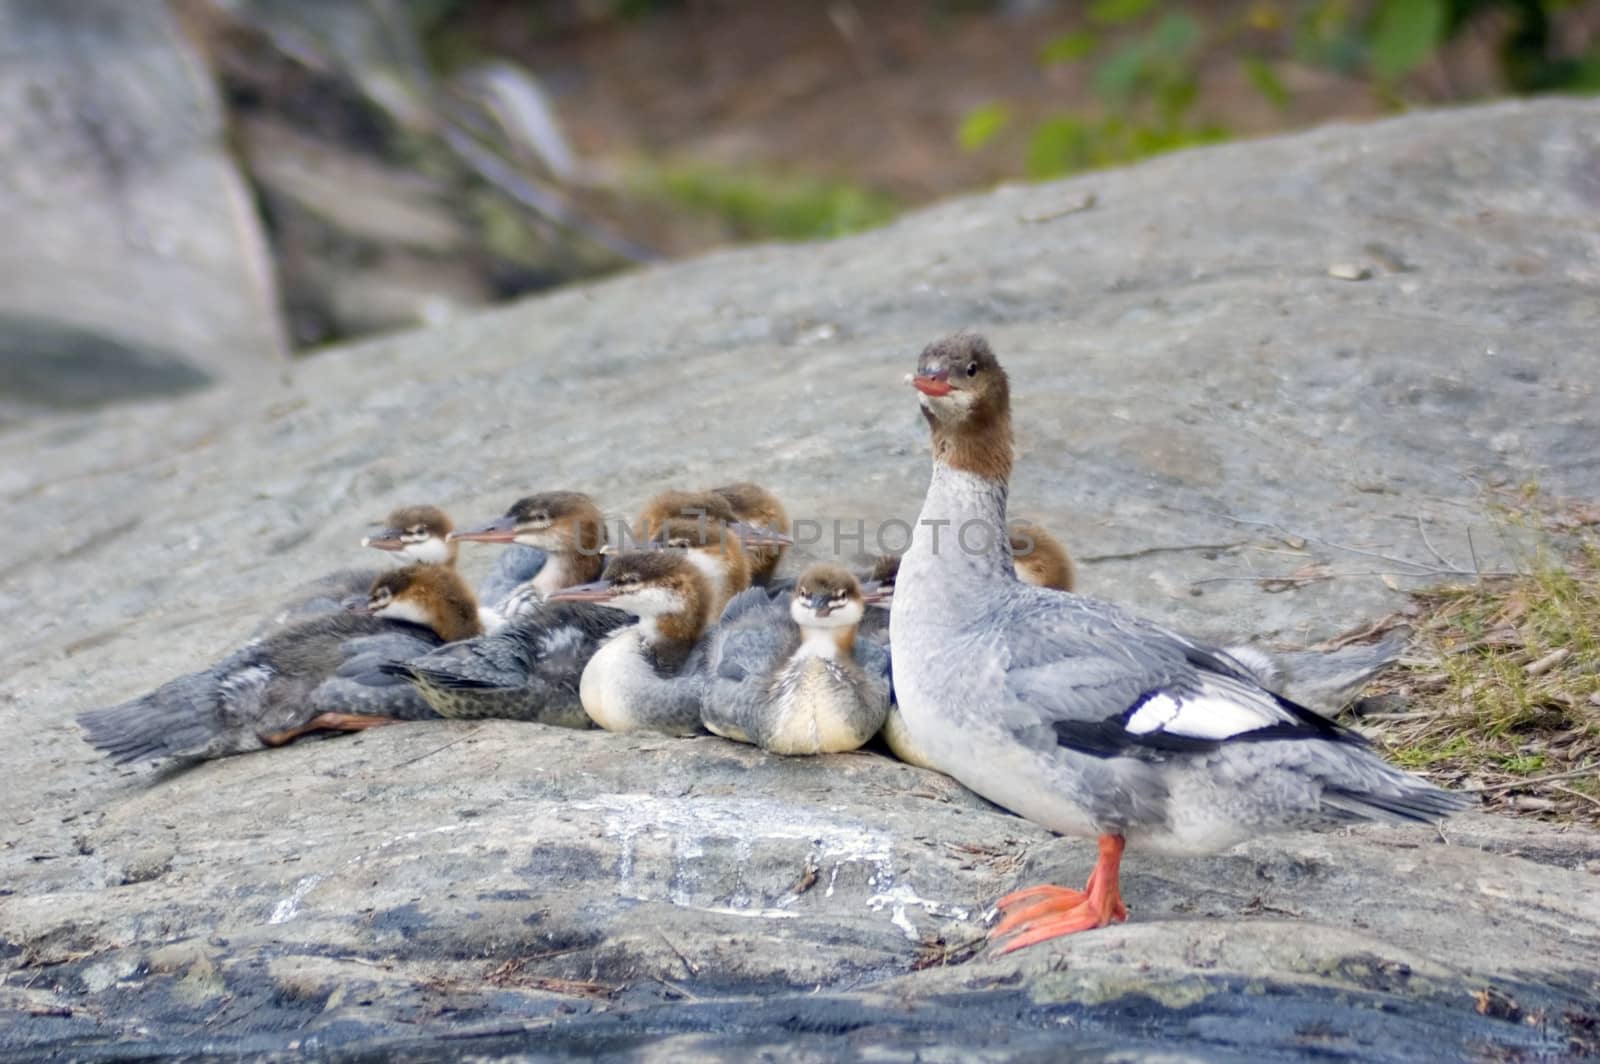 Common Merganser family on the rock shore of the lake